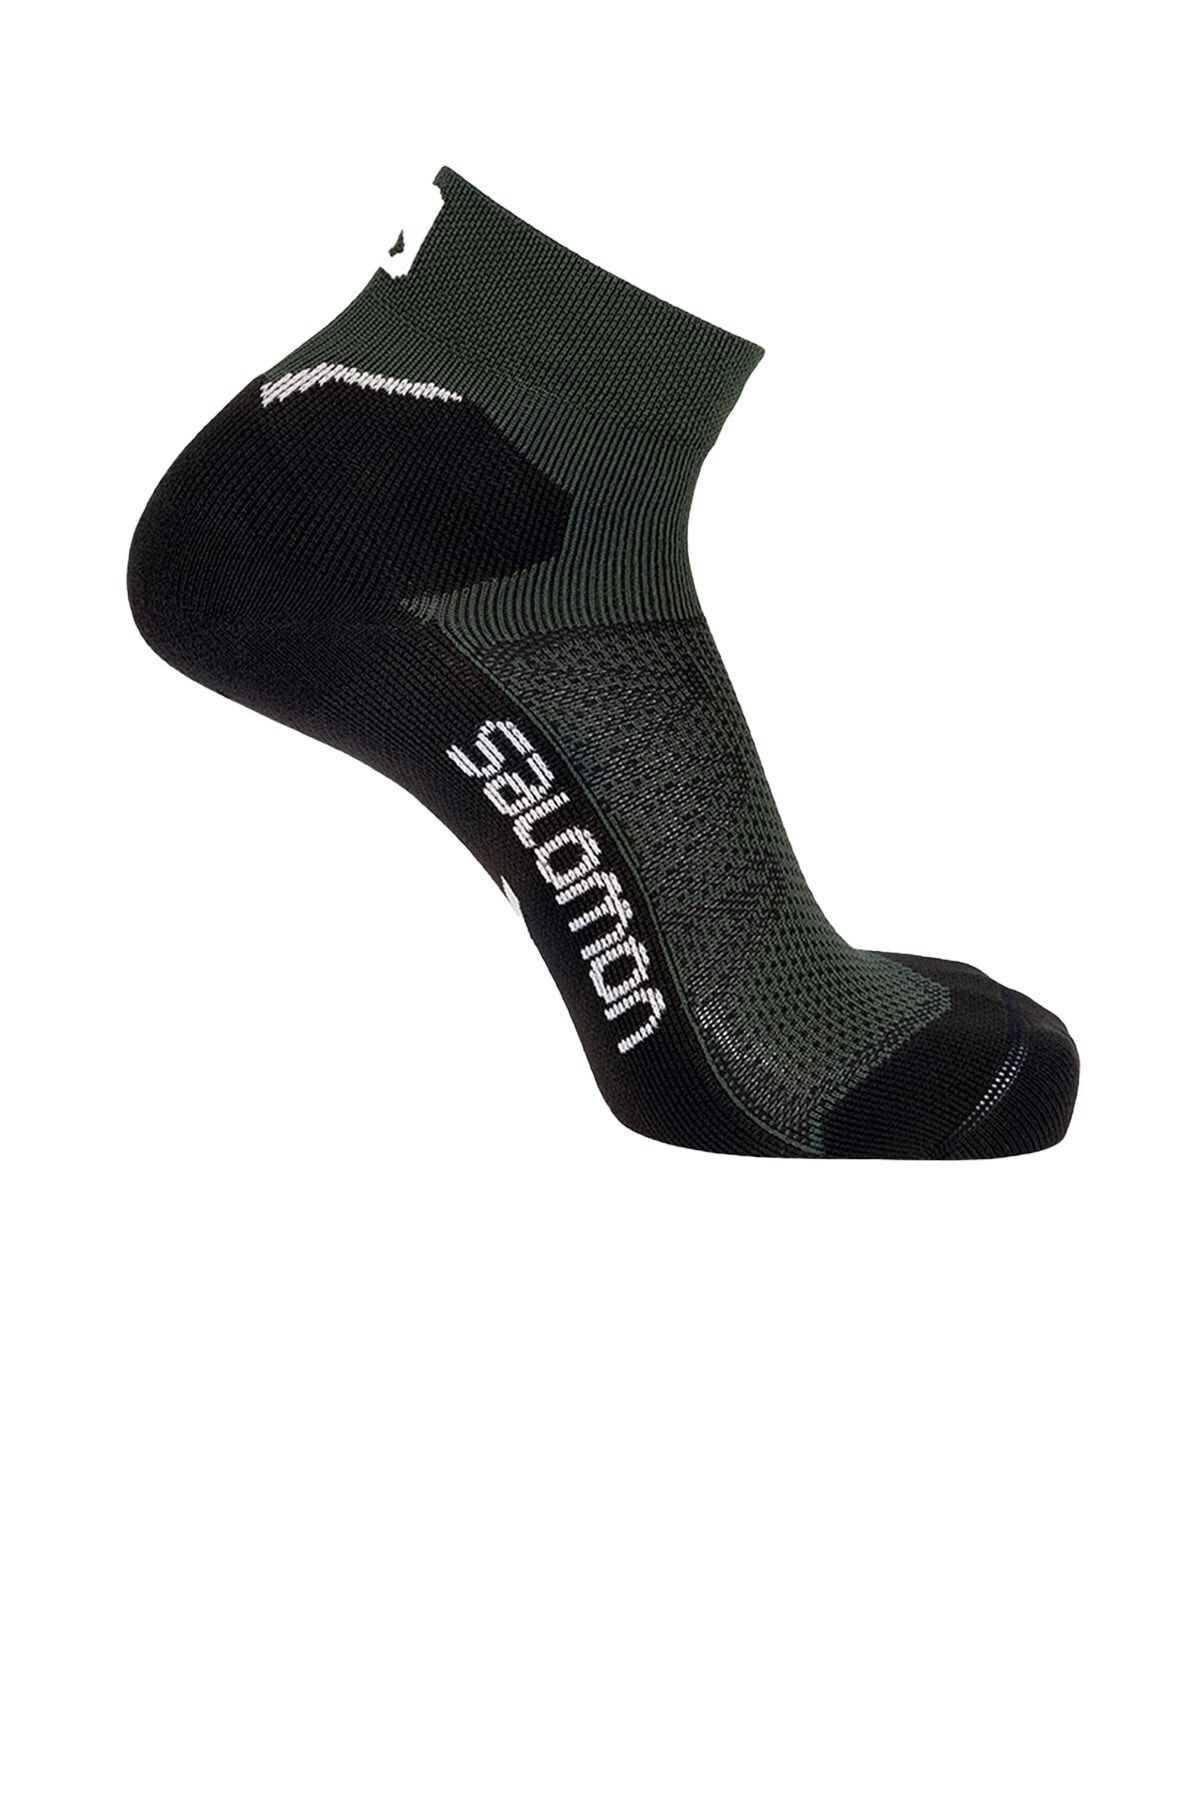 Salomon Speedcross Ankle Çorap Lc17811